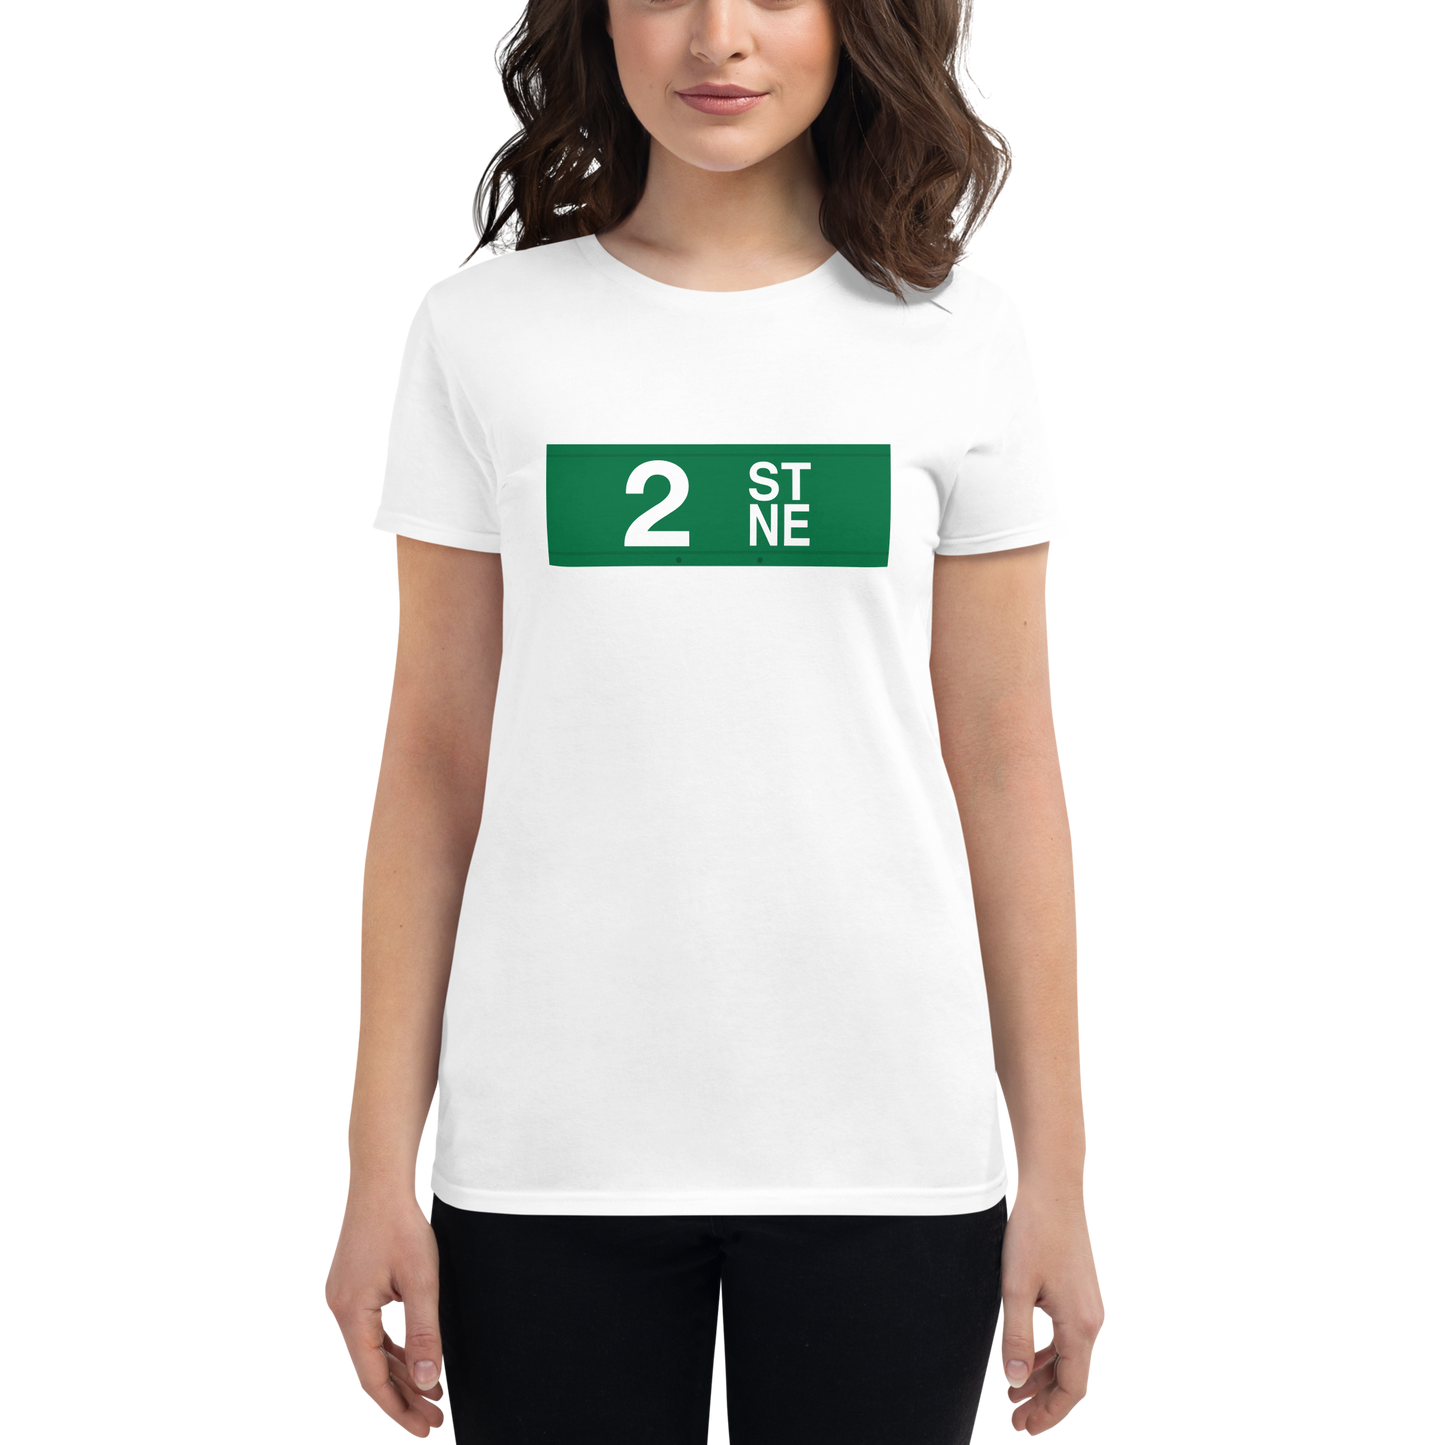 2nd St NE Women's short sleeve t-shirt